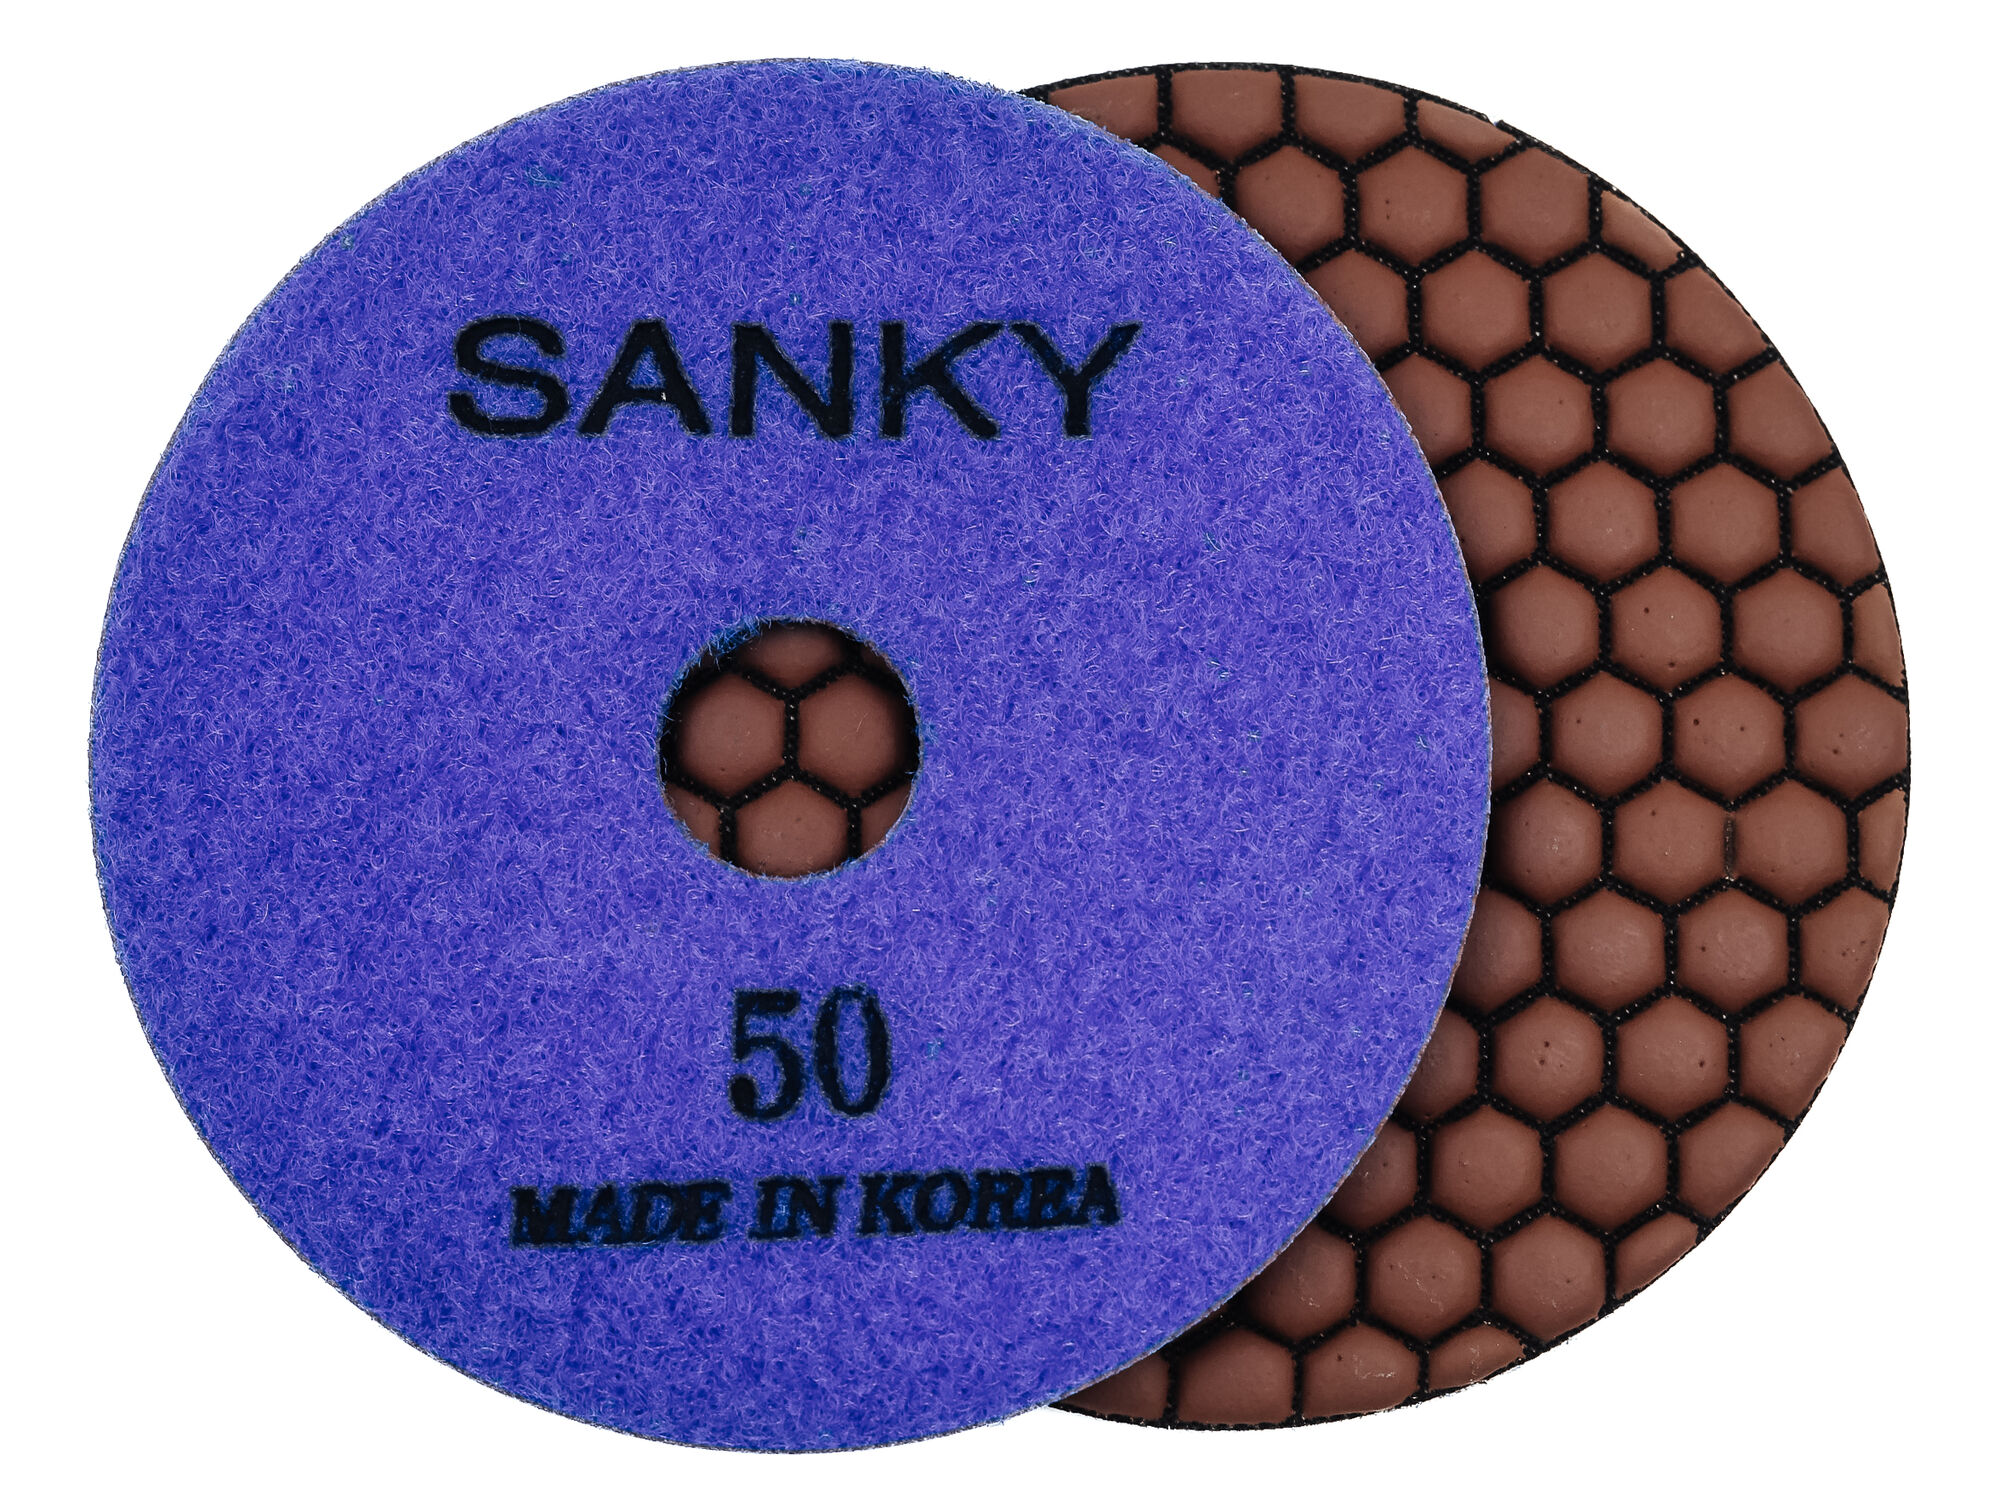 Алмазные гибкие диски № 50 Ø 100 cухие SANKY 1 шт